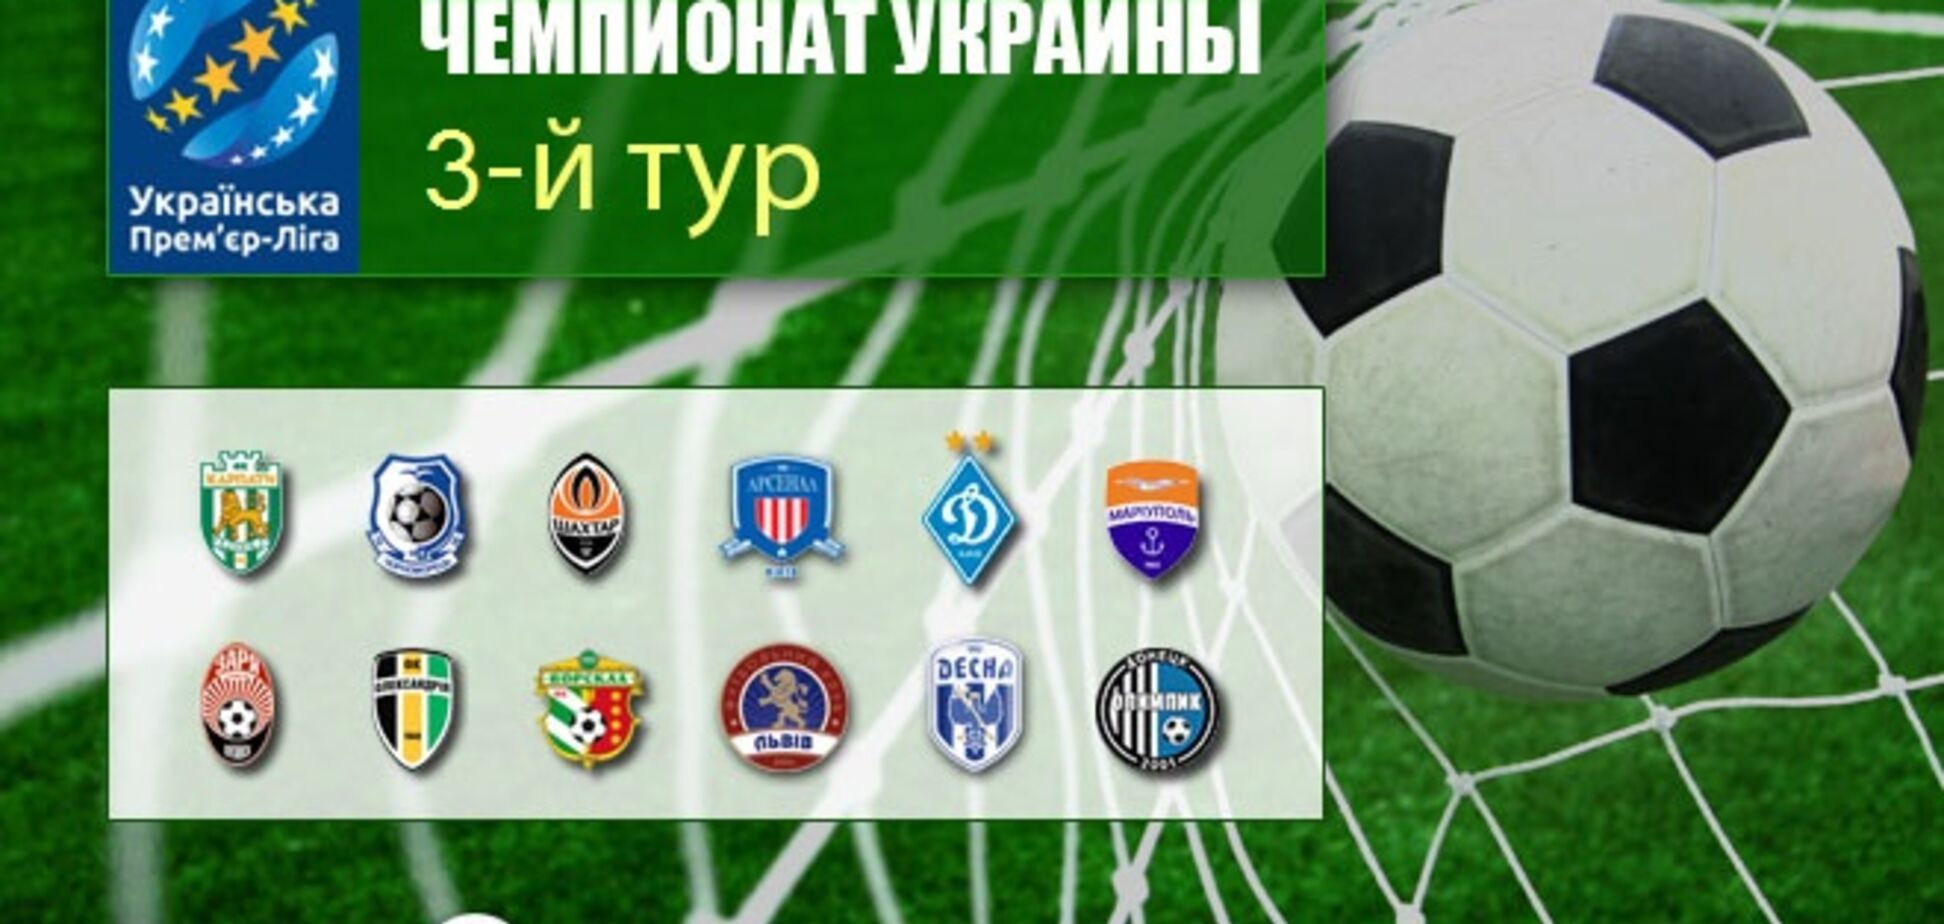 3-й тур чемпионата Украины по футболу:  все результаты, видеообзоры, таблица